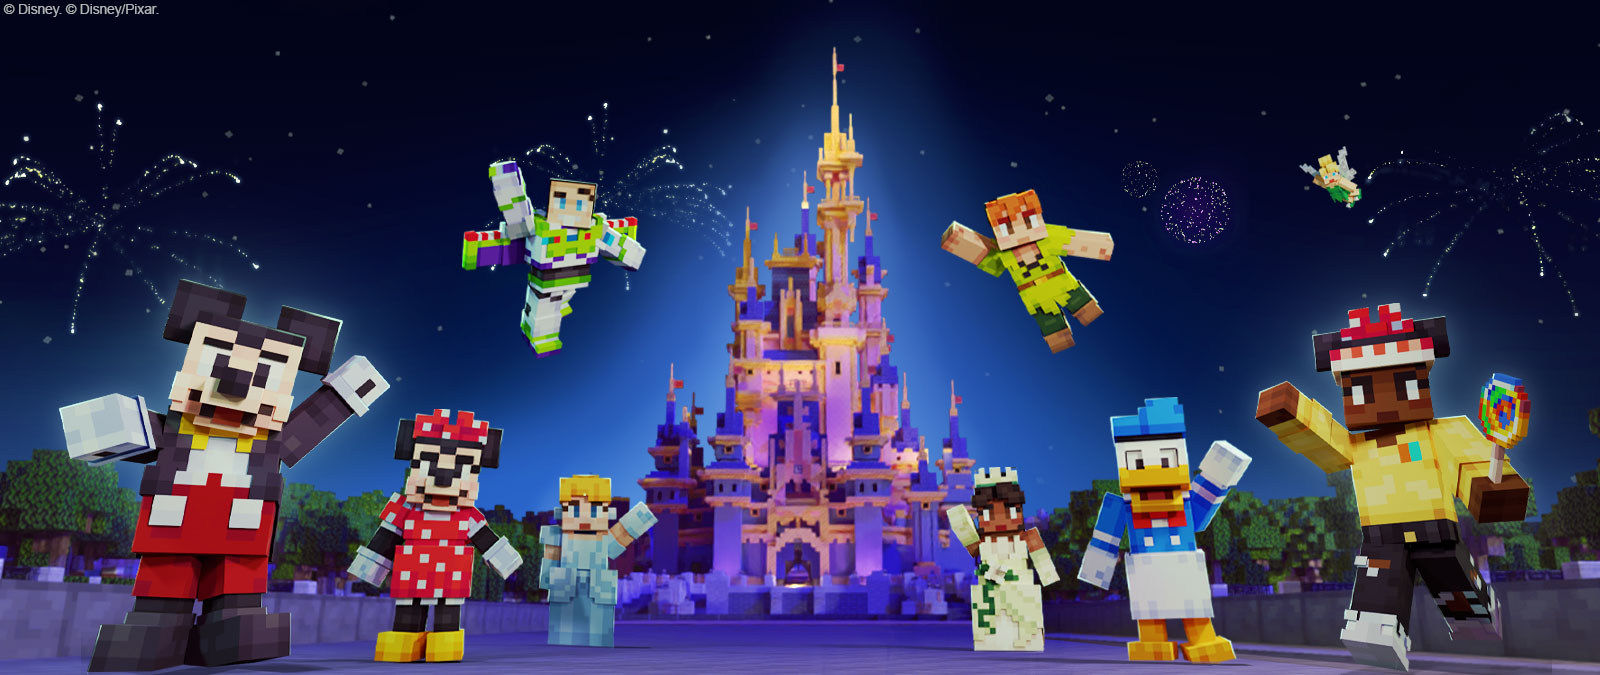 Disney 城の前にいる Minecraft 風のミッキーマウス、ミニーマウス、バズ・ライトイヤー、シンデレラ、ピーターパン、ティアナ、ドナルドダック、ティンカー・ベルその他のキャラクター